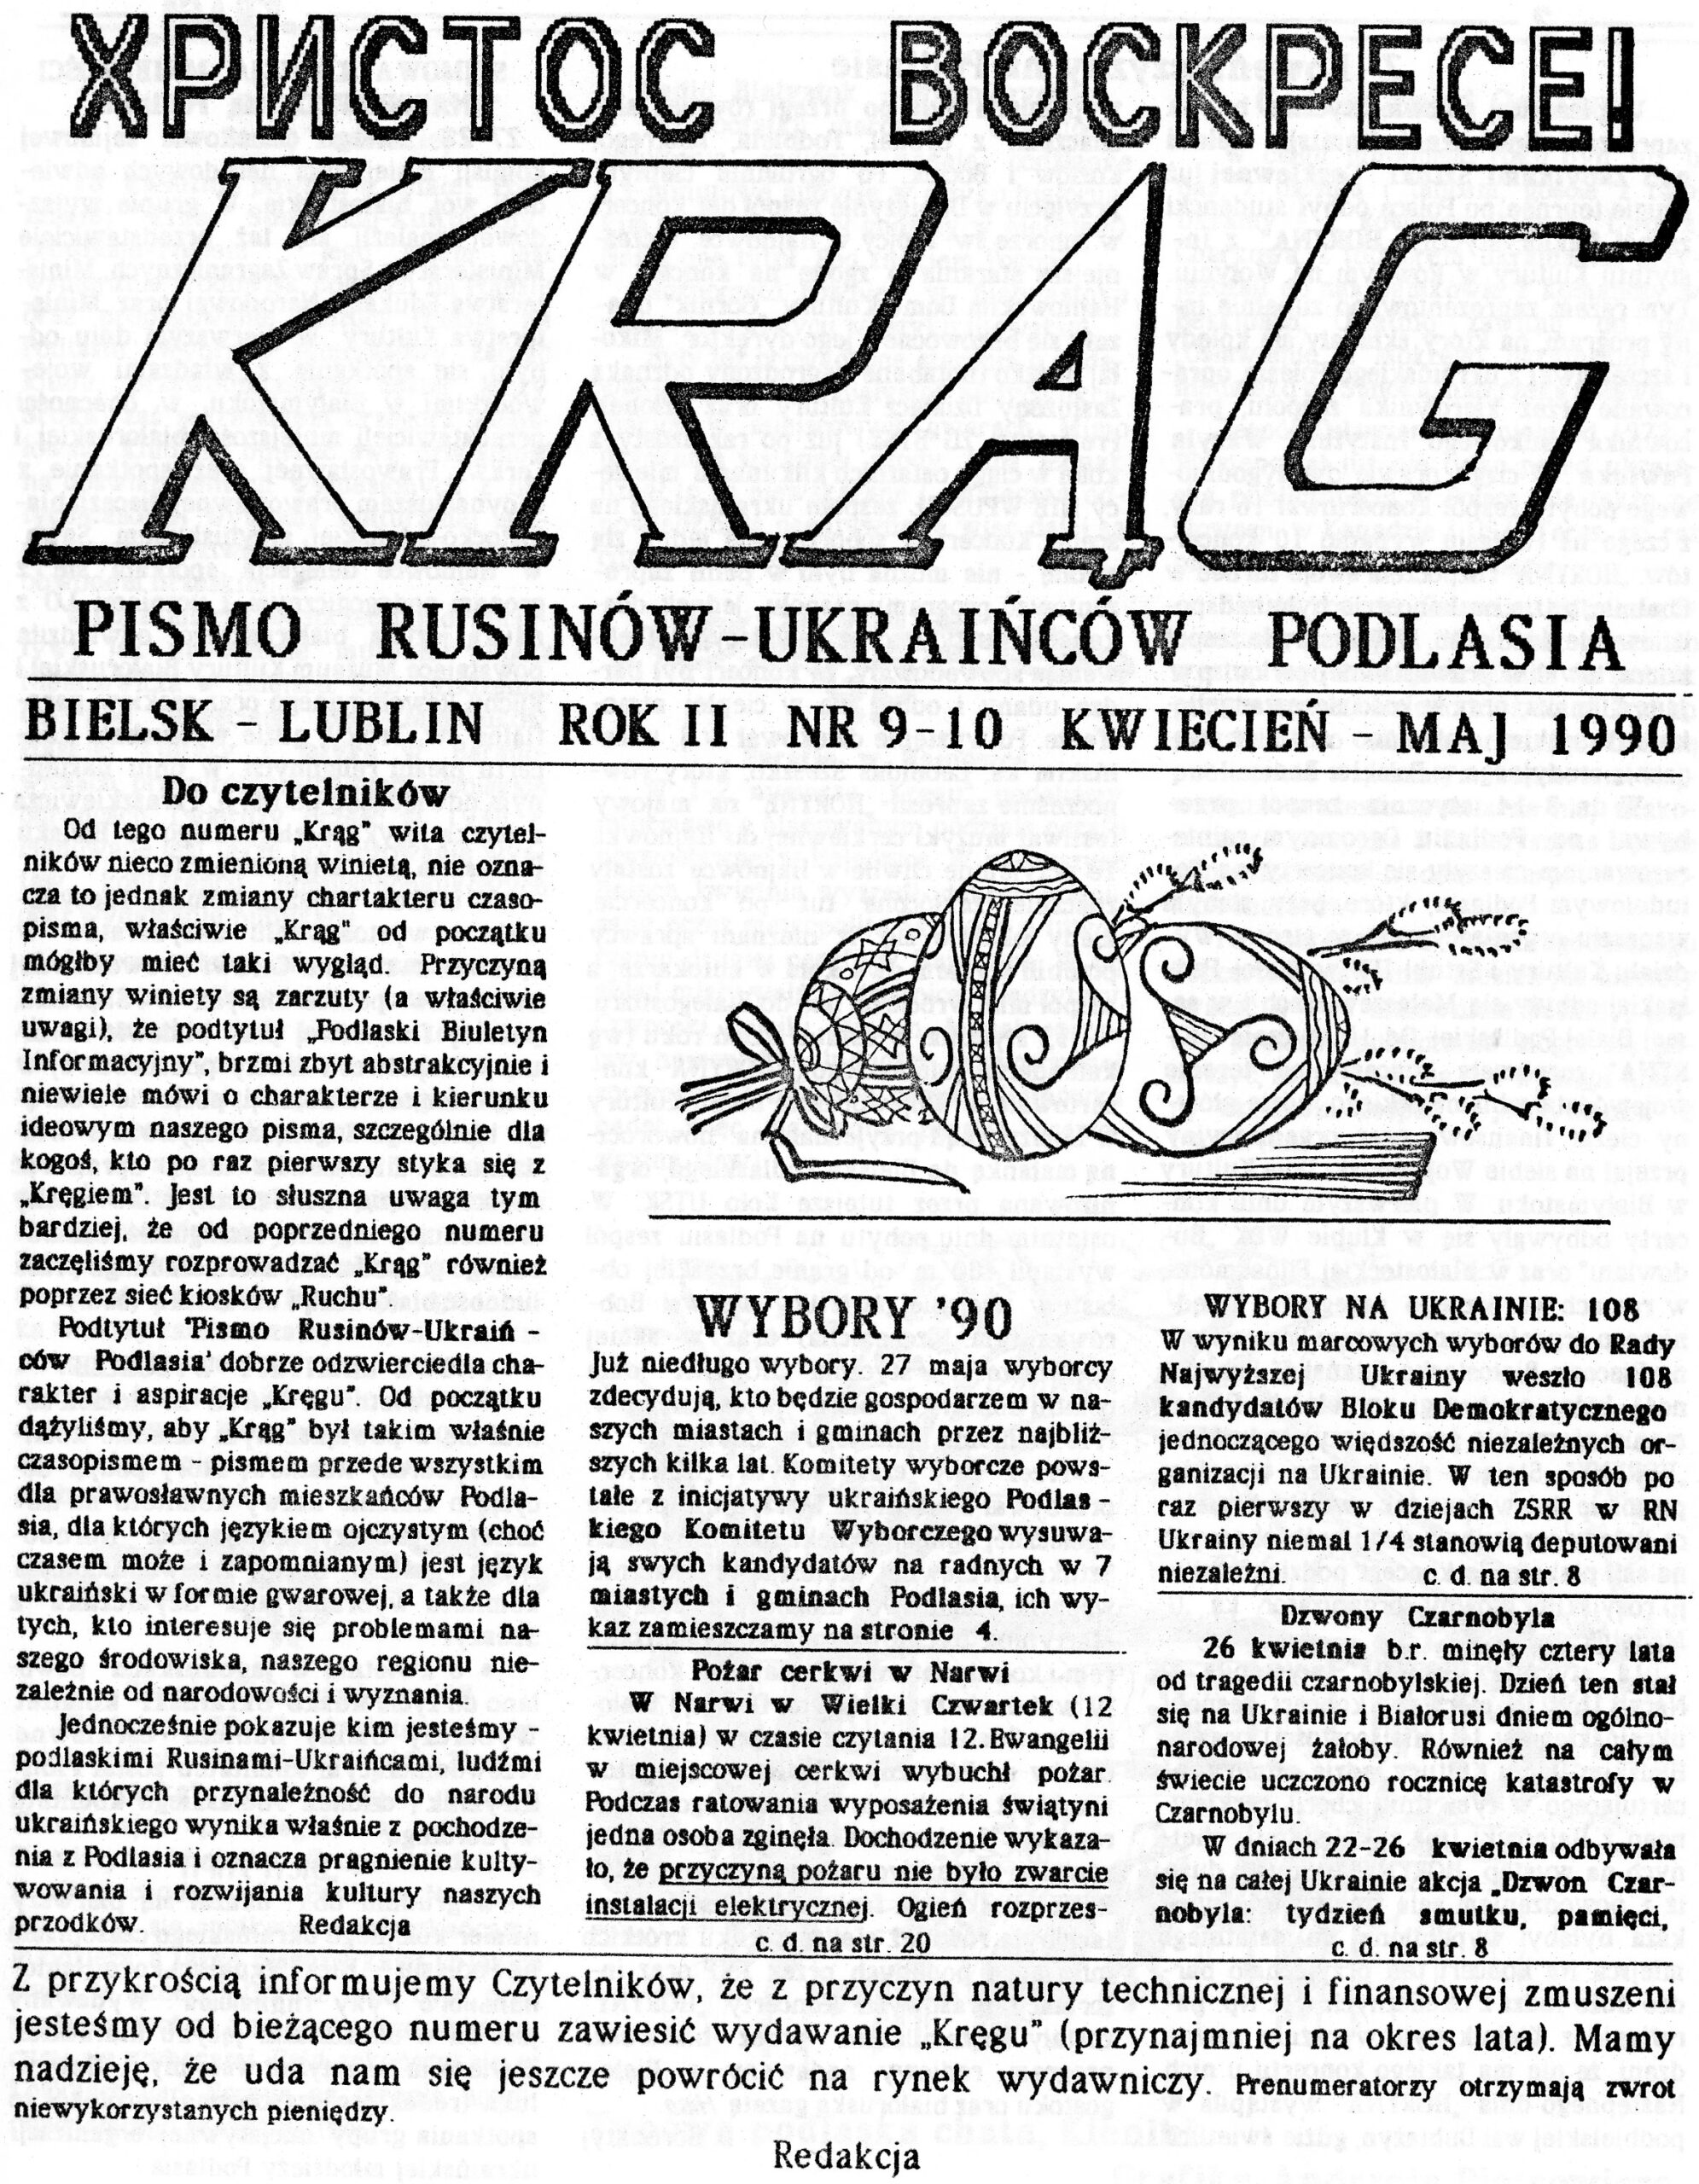 Pismo Rusinów – Ukraińców Podlasia KRĄG, Bielsk – Lublin, nr 9-10, 4-5.1990 r.